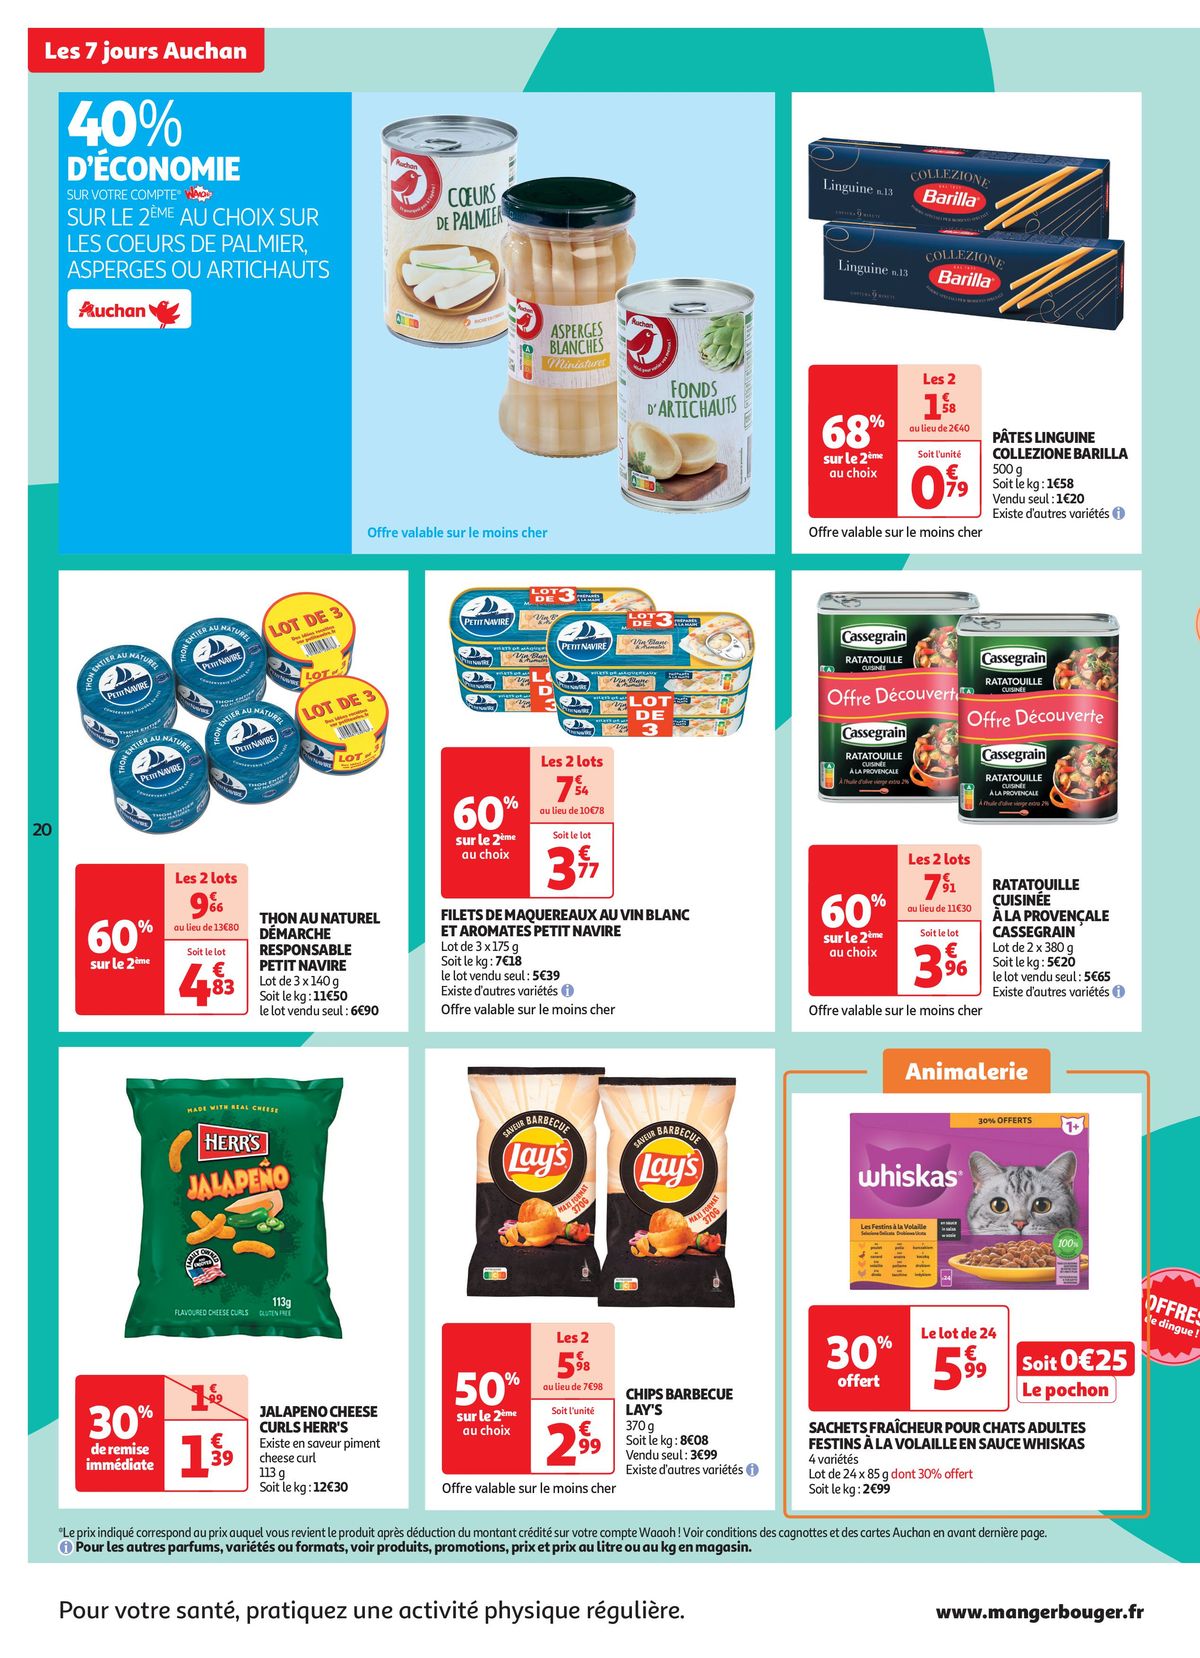 Catalogue C'est les 7 jours Auchan dans votre super !, page 00020